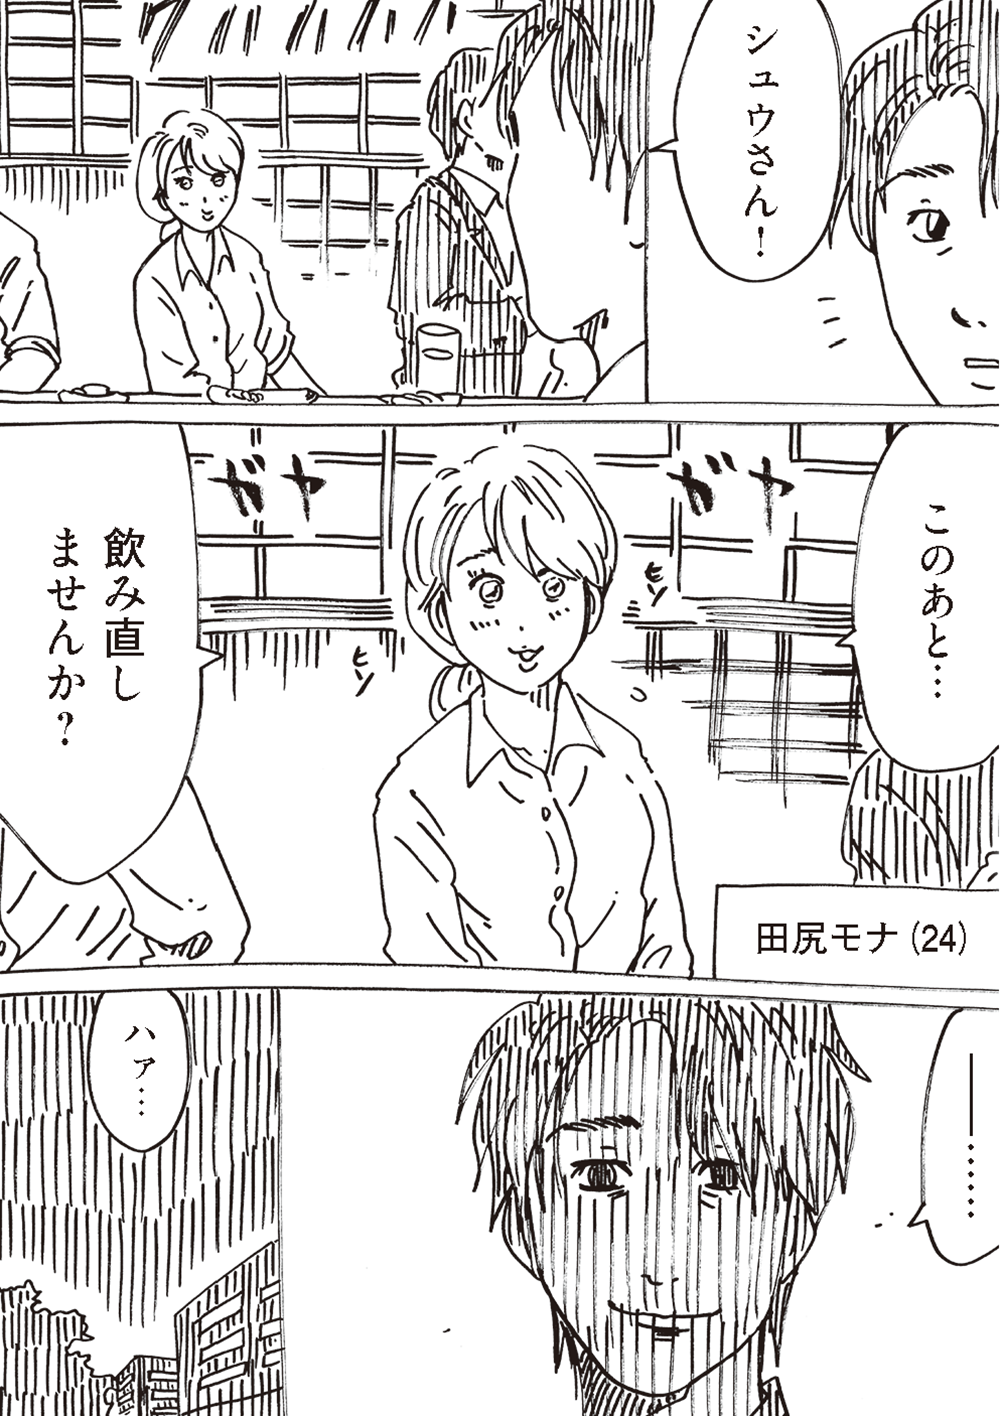 え、不倫？「飲み直しませんか」職場の若い女性に誘われた夫の「表情」／どちらかの家庭が崩壊する漫画 oomisoka_houkai_nyukou_015.png